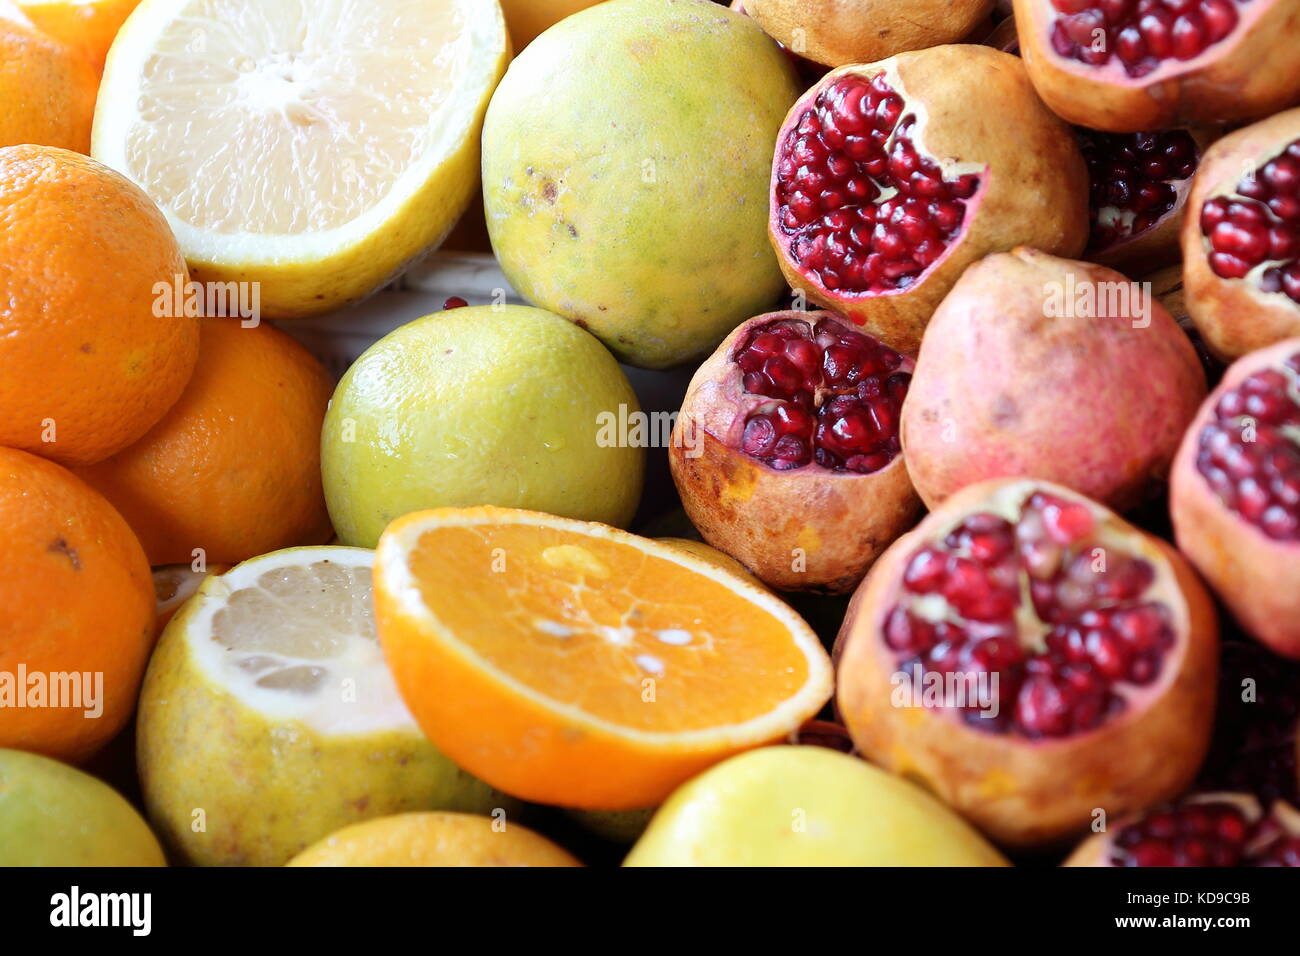 Eine Komposition aus frischen Früchten, einschließlich Orange, Apfel, Granatapfel und Lemmon, auf einem Basar/Souk in Teheran, Iran. frische Säfte serviert. Stockfoto